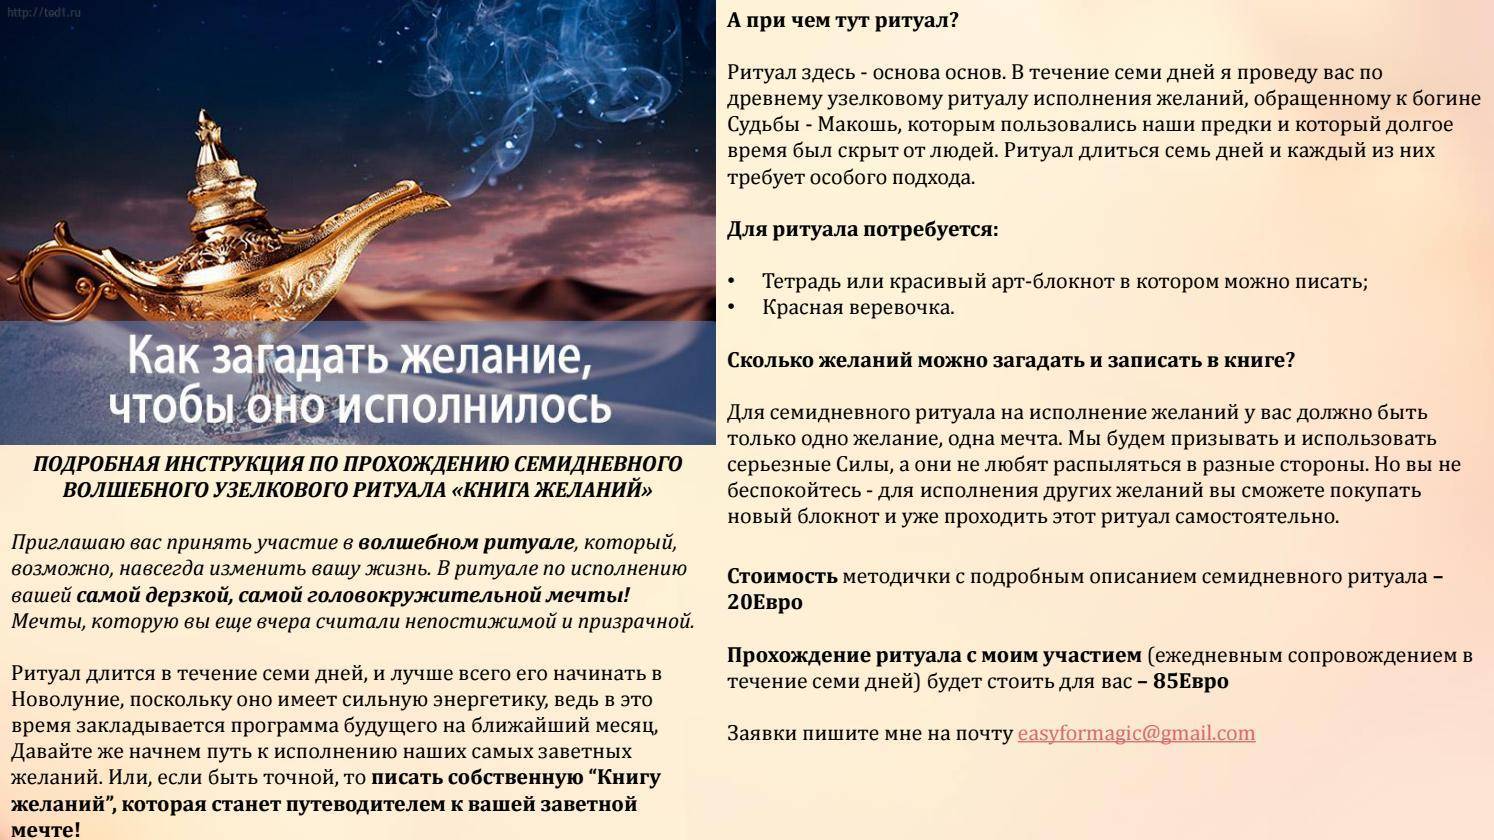 Как загадать желание, чтобы оно сбылось? загадываем желание на бумаге, на свечку :: syl.ru